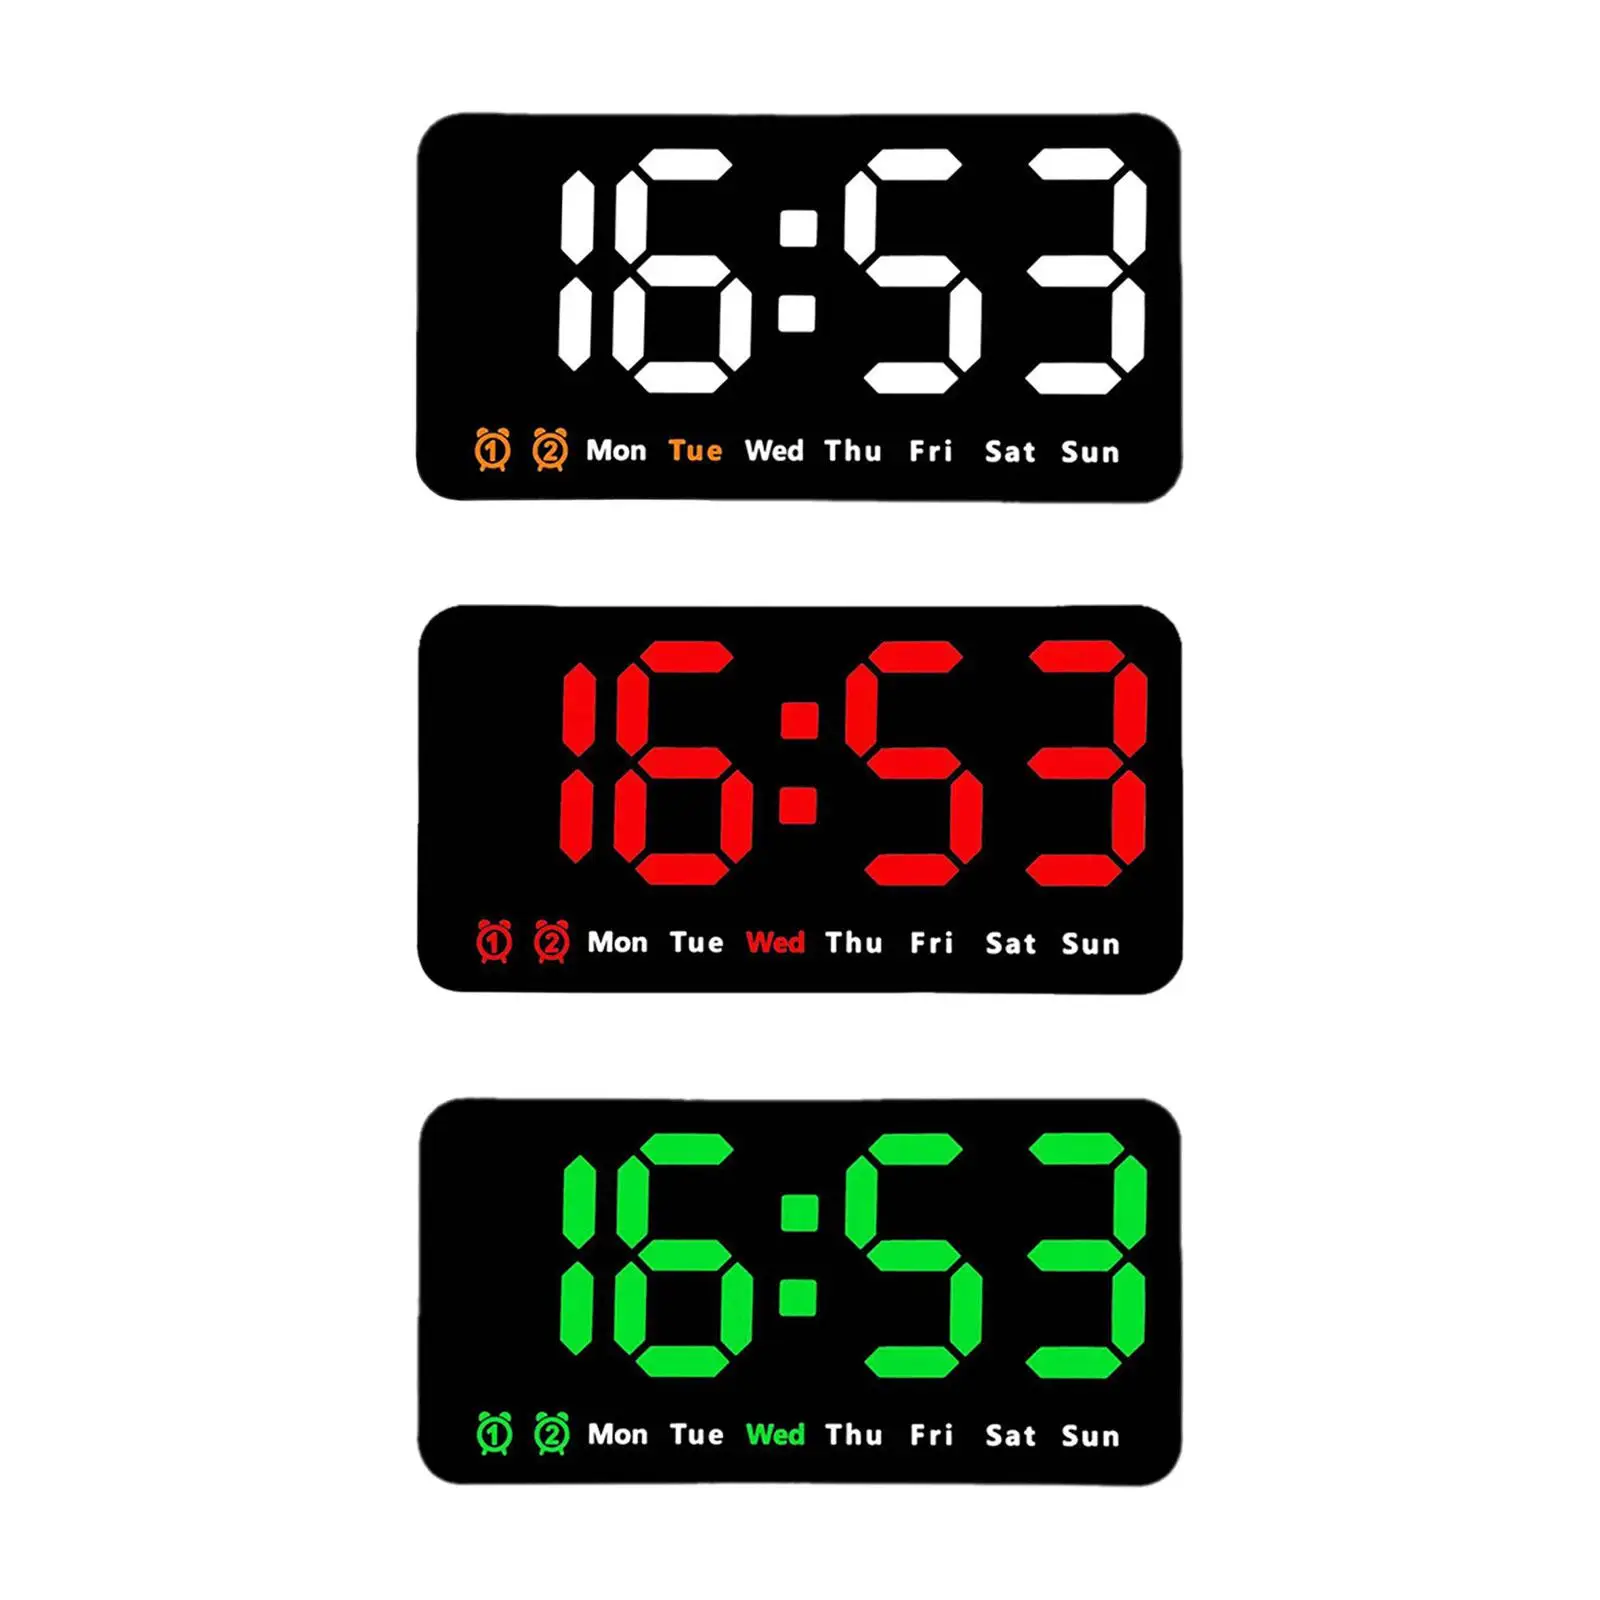 LED Desktop Alarm Clock Desktop Digital Clock for Bedroom Home